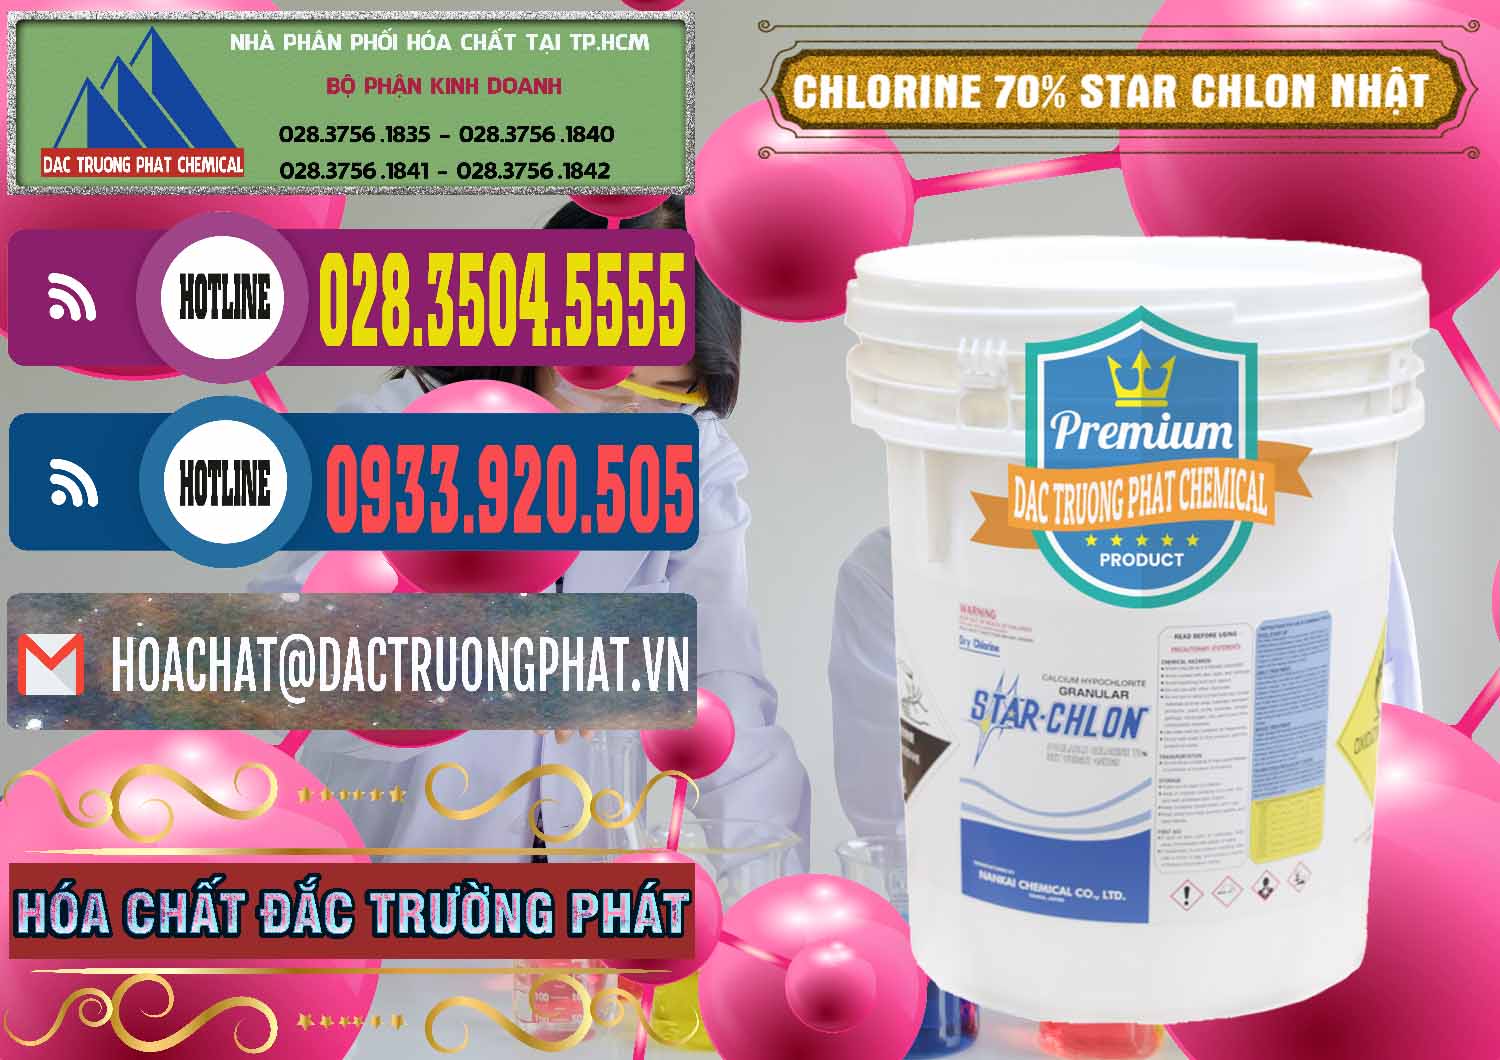 Nhà cung cấp & bán Clorin – Chlorine 70% Star Chlon Nhật Bản Japan - 0243 - Chuyên cung ứng _ phân phối hóa chất tại TP.HCM - muabanhoachat.com.vn